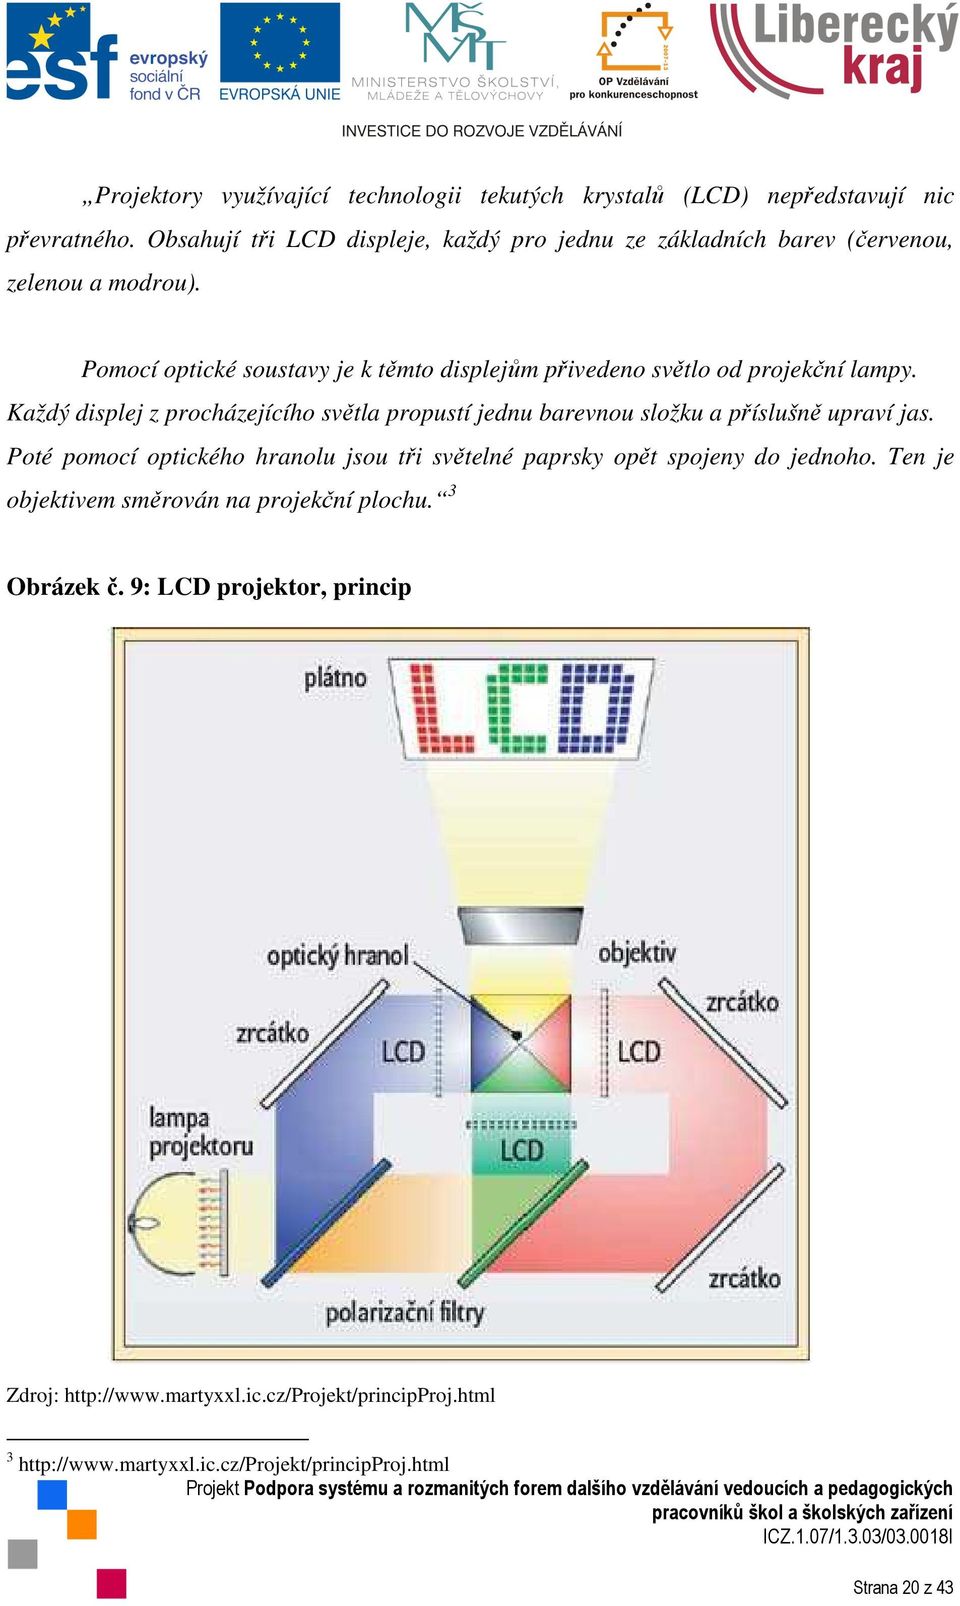 Pomocí optické soustavy je k těmto displejům přivedeno světlo od projekční lampy.